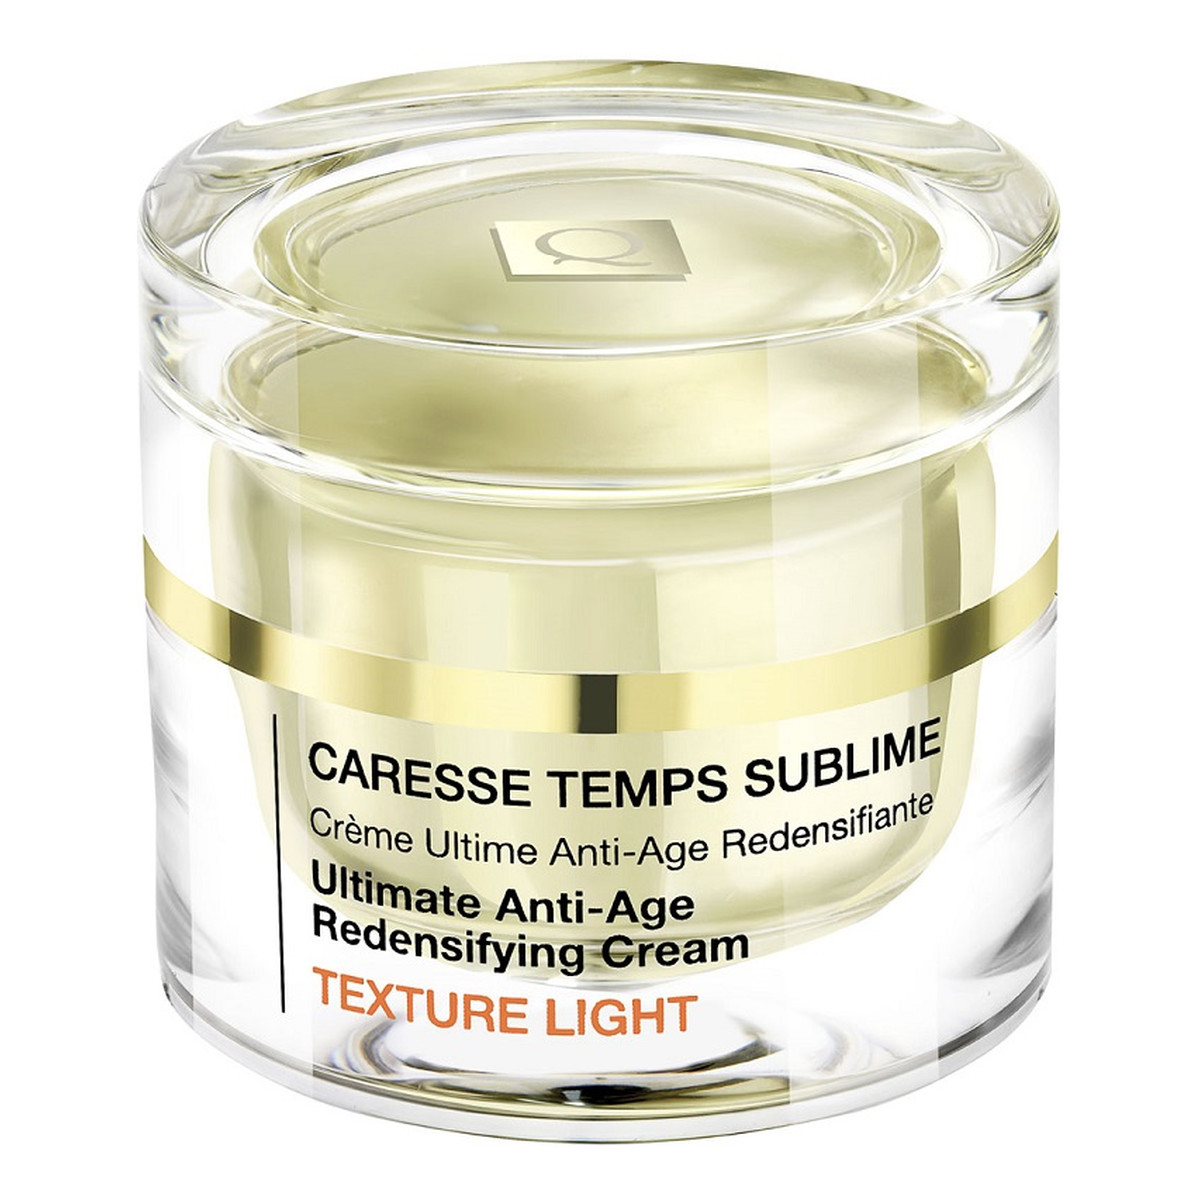 Qiriness Caresse Temps Sublime Texture Light krem poprawiający gęstość skóry przeciwstarzeniowy 50ml